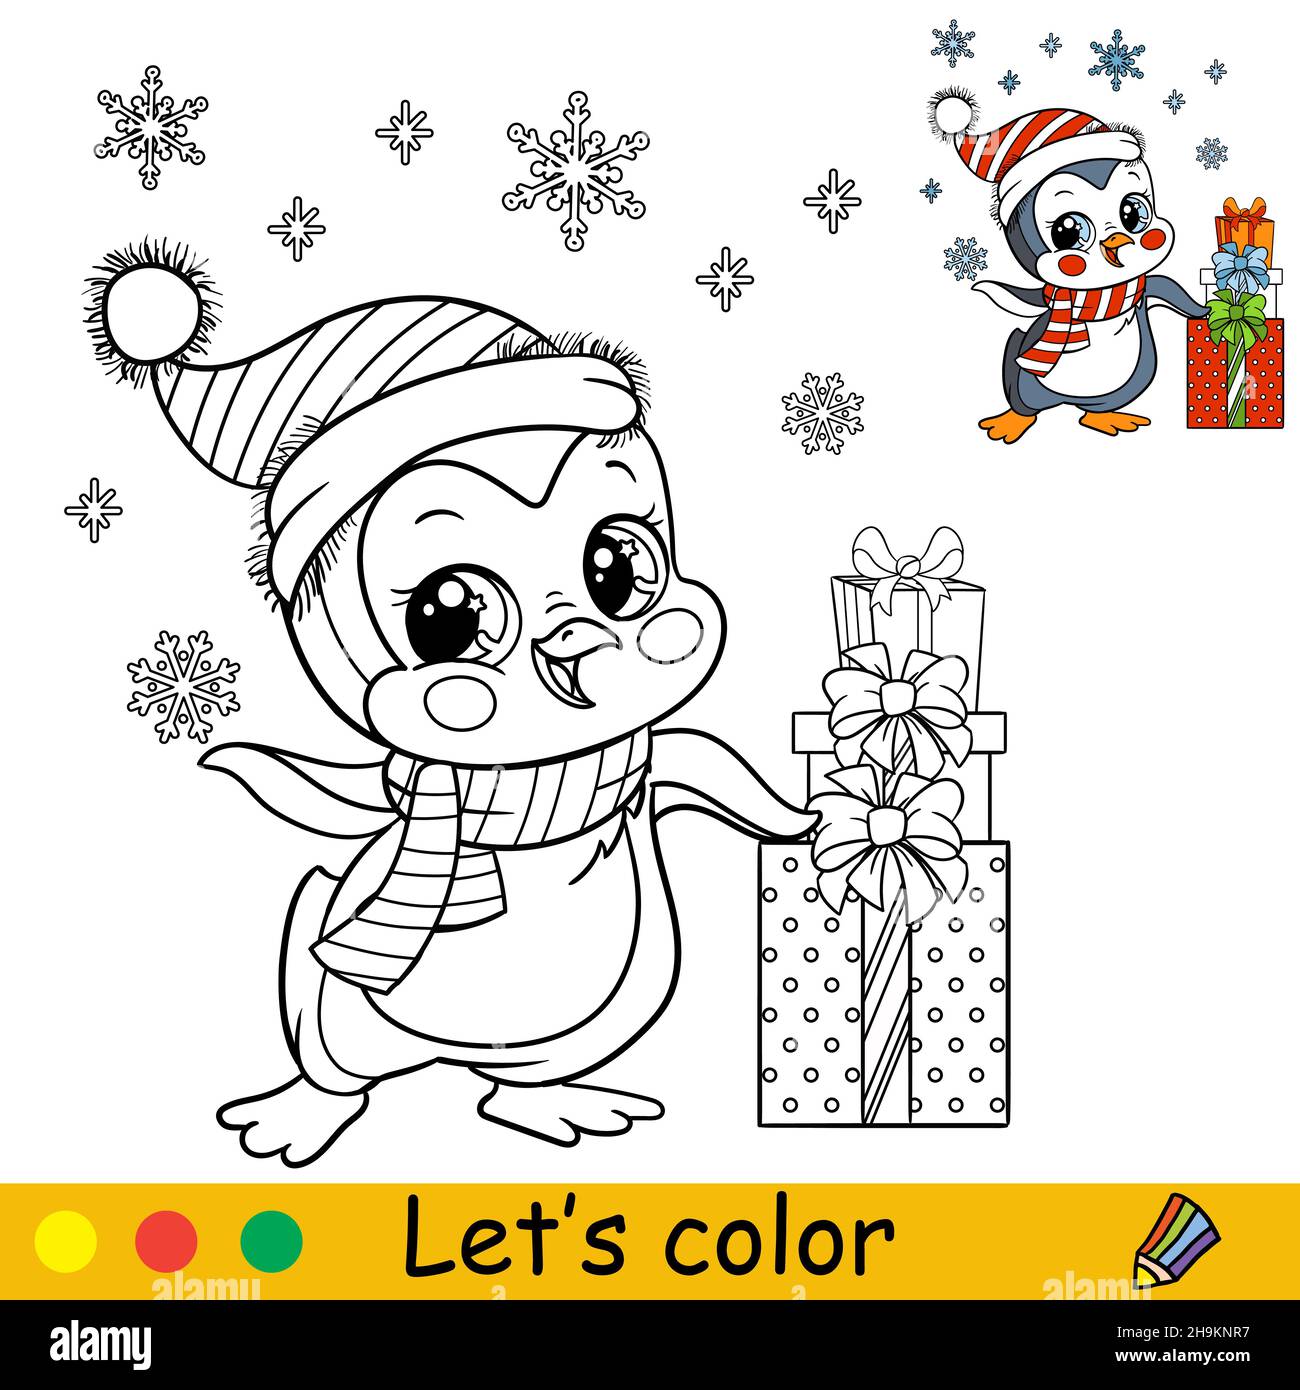 Niedlicher Pinguin in einem Weihnachtshut mit Schneeflocken und Geschenken. Zeichentrickfigur. Vektor-isolierte Illustration. Malbuch mit farbigem Beispiel. Für Stock Vektor